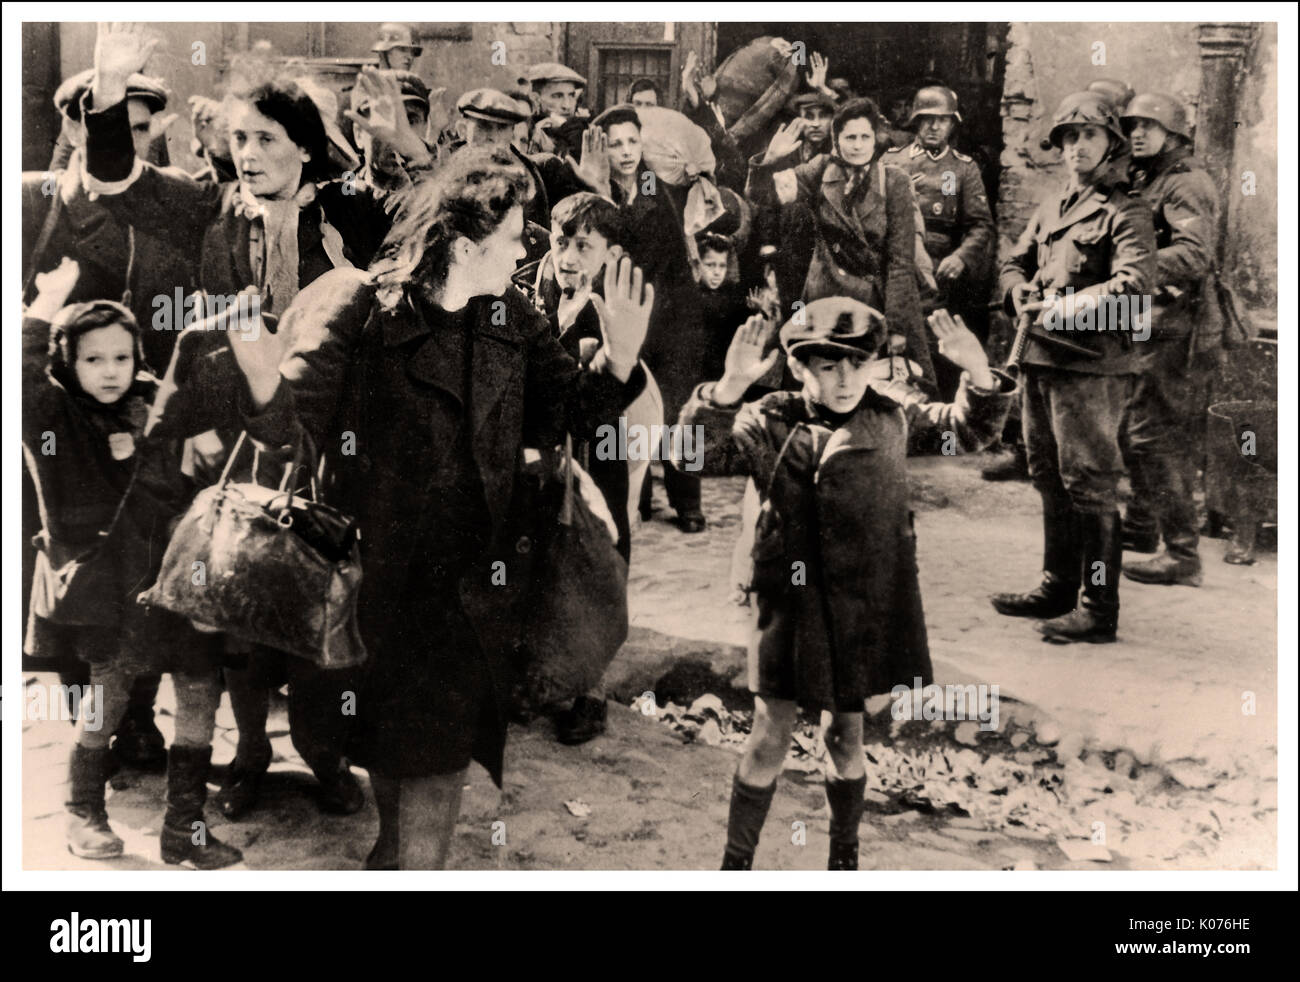 WARSAW GHETTO RAGAZZO ARRENDERSI EBRAICO DONNE & BAMBINI questa immagine poignant WW2 mostra gli uomini ebrei donne e bambini dal ghetto di Varsavia arrendersi ai soldati tedeschi dopo la coraggiosa e valorosa rivolta. Evacuazione del Ghetto di Varsavia, usato come prova ( rapporto Stroop) durante i processi di Norimberga, 1945/6 si noti che il piccolo bambino polacco sullo sfondo centrale con ammirevole sfida al fotografo tedesco nazista che mette la lingua fuori dalla macchina fotografica Foto Stock